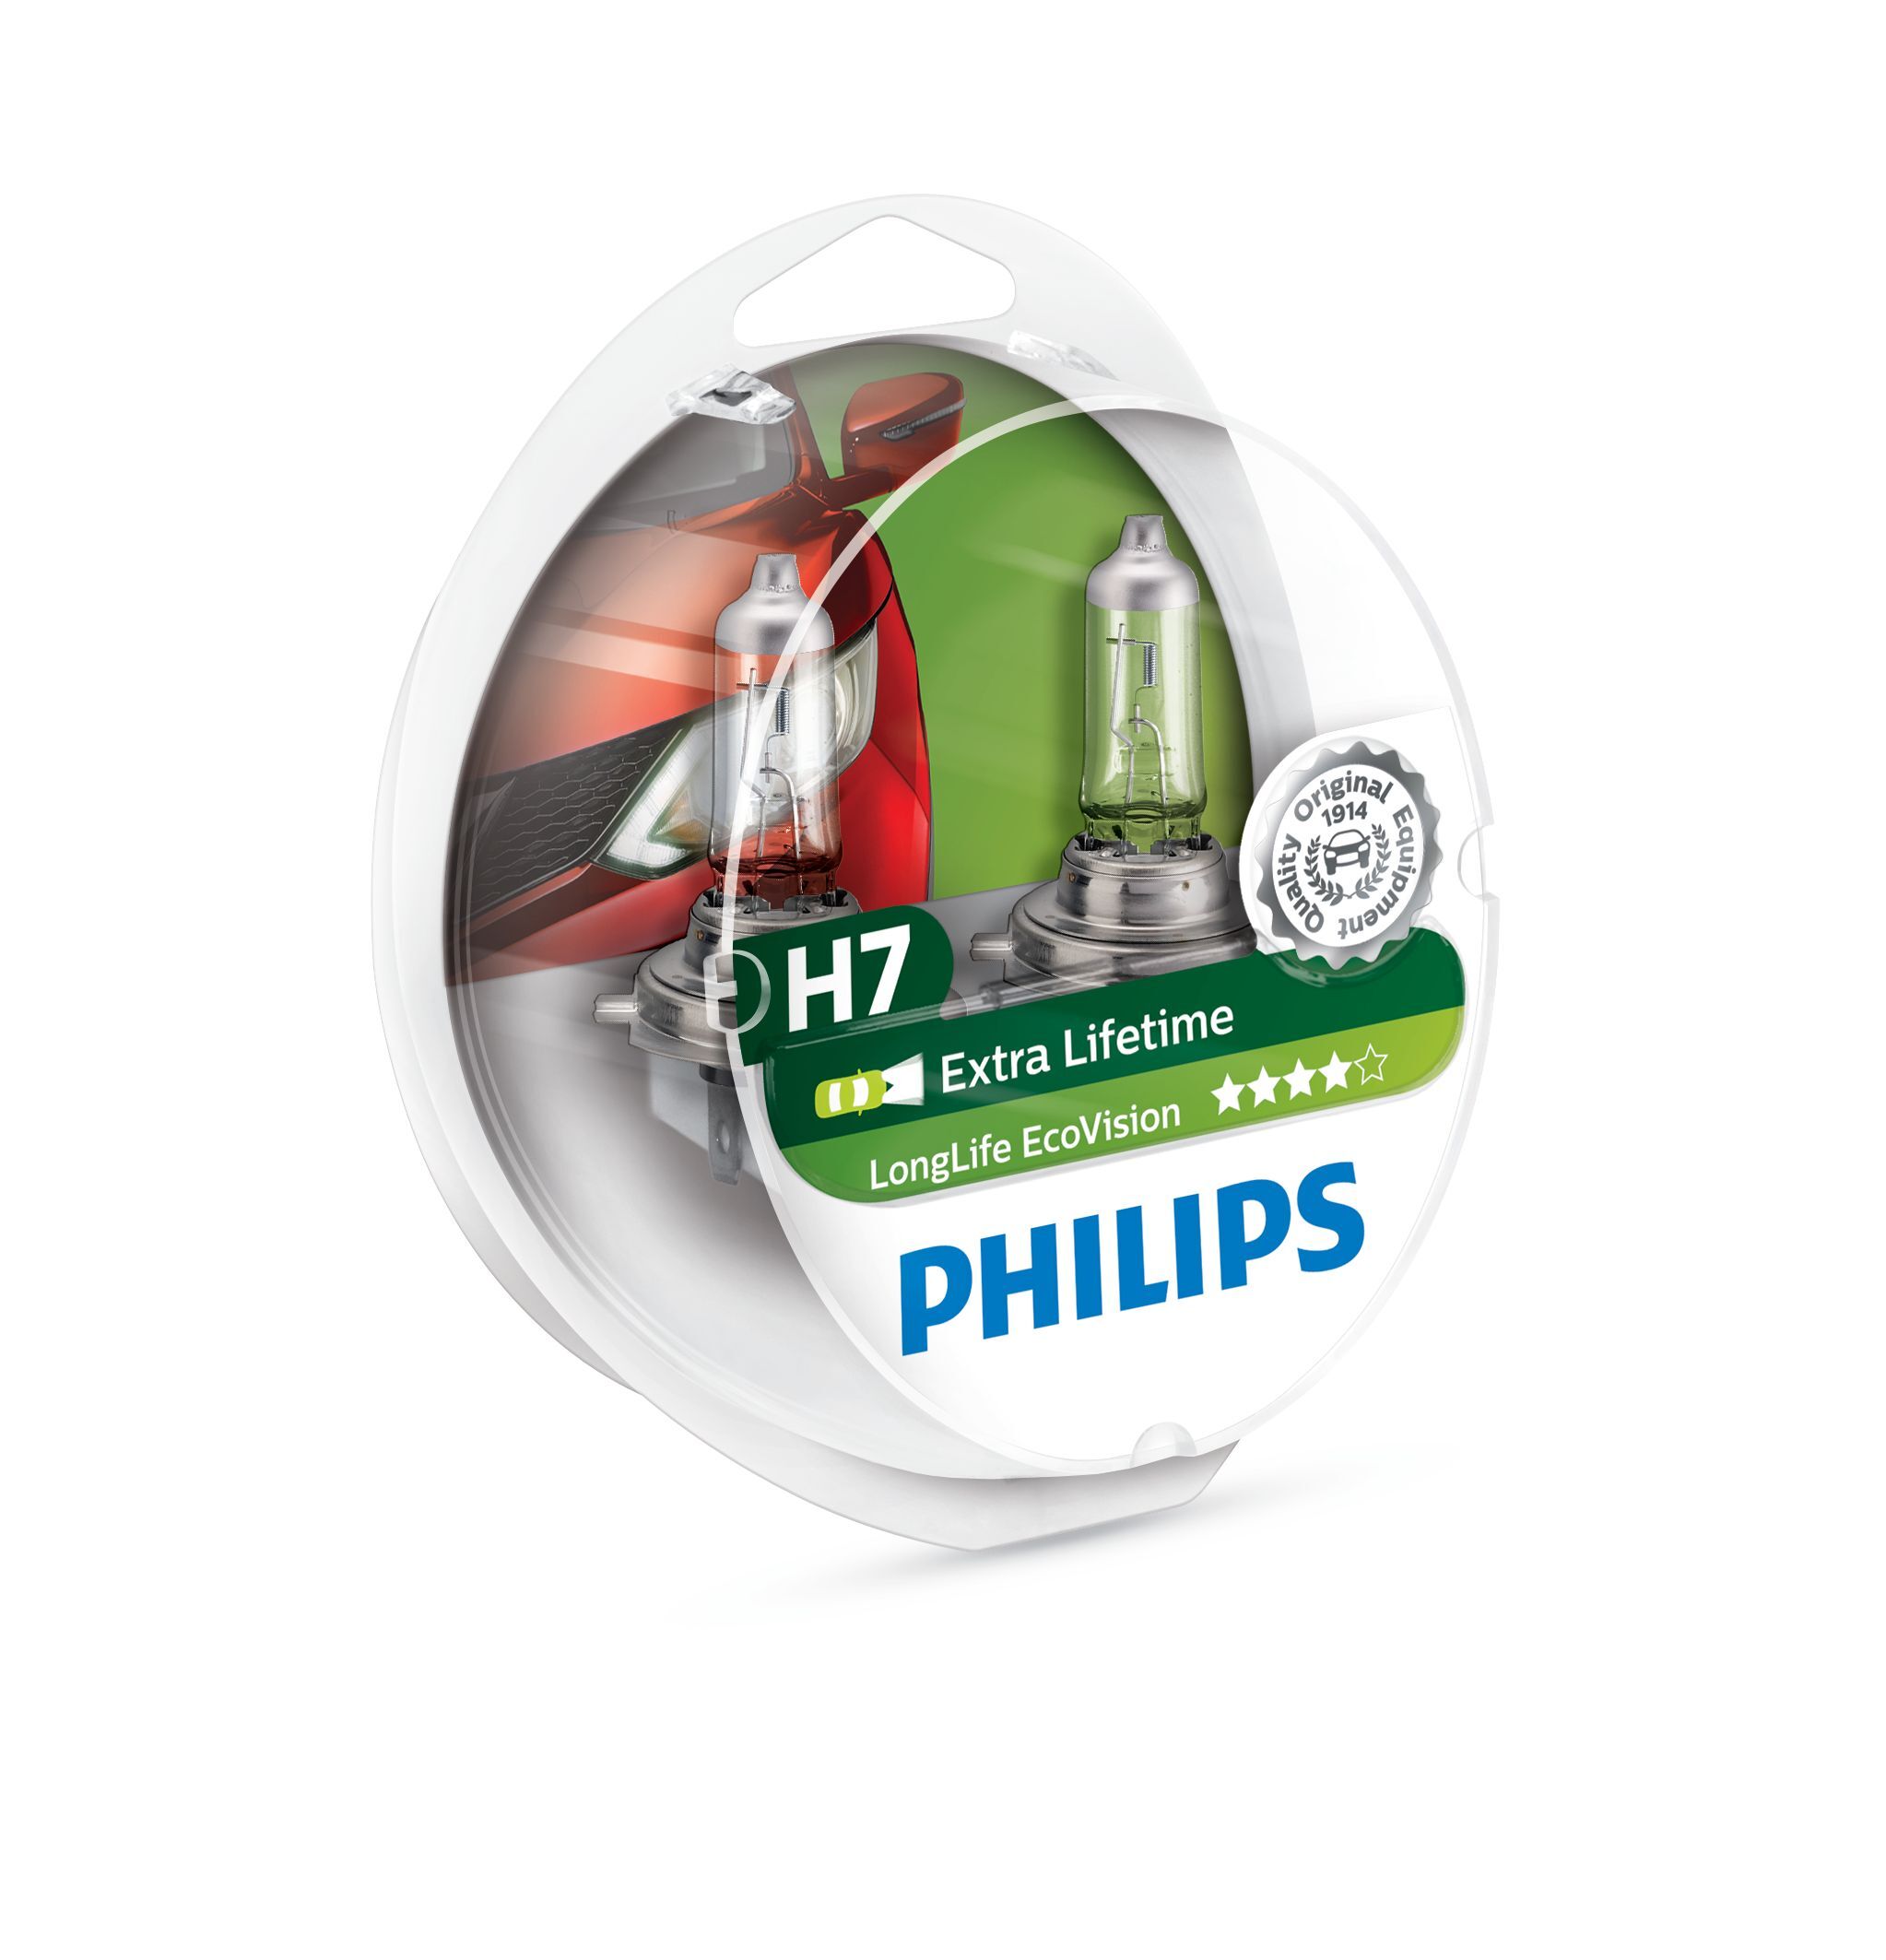 Philips LongLife EcoVision Type lamp: H7, verpakking van 2, koplamp voor auto